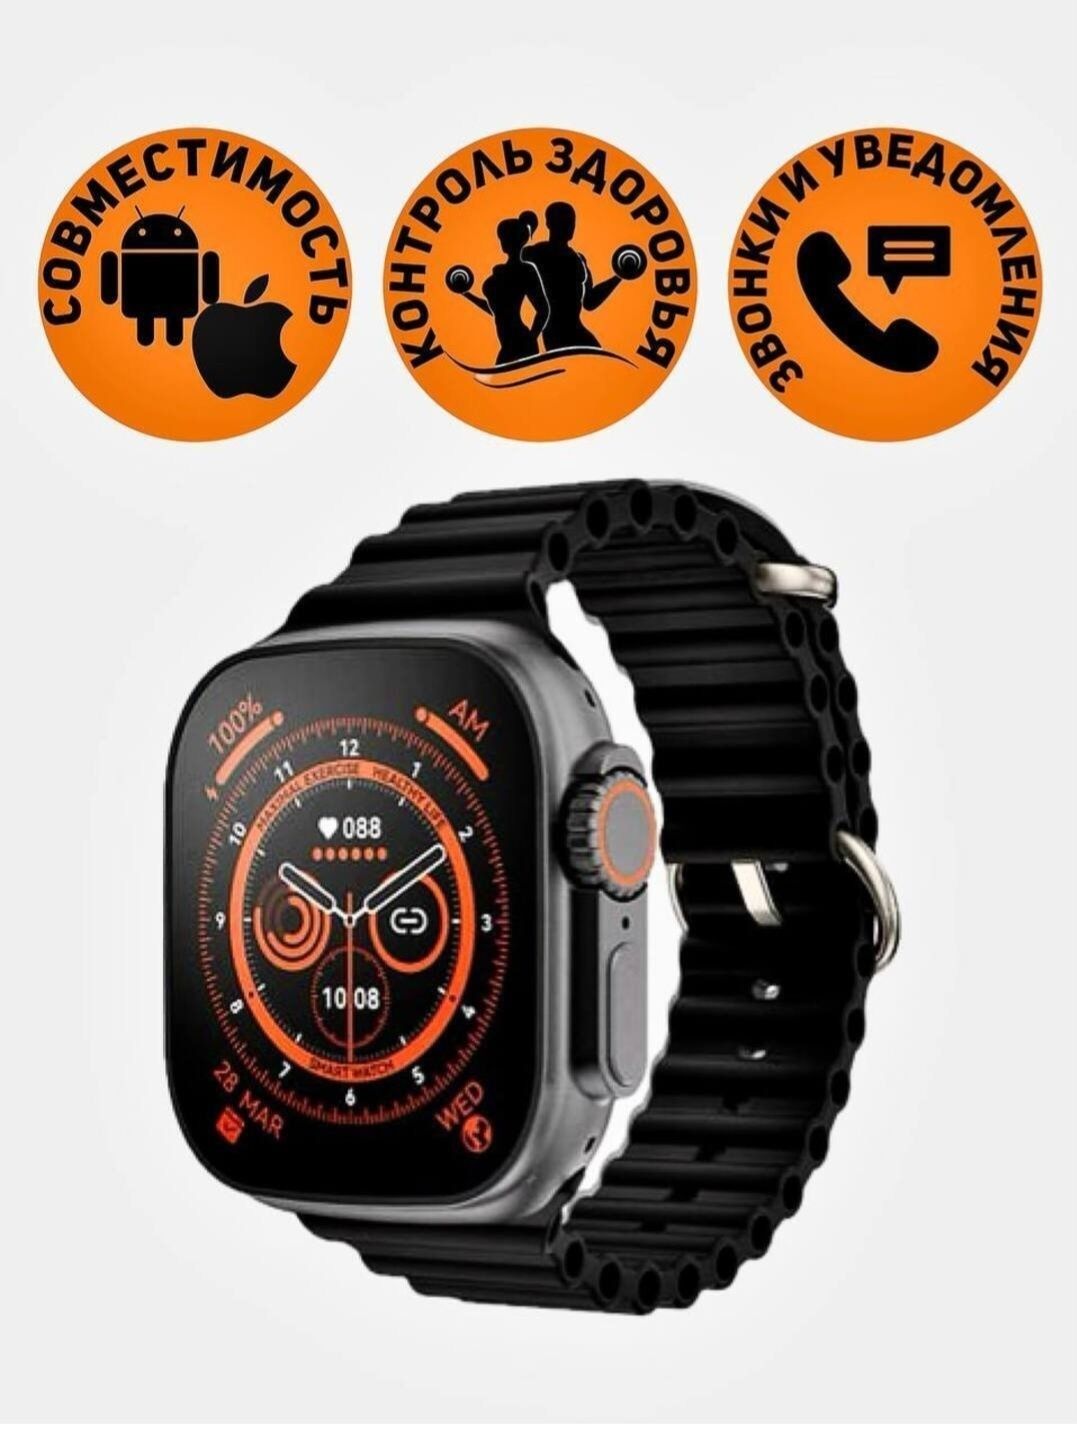 Smart watch T800 ultra